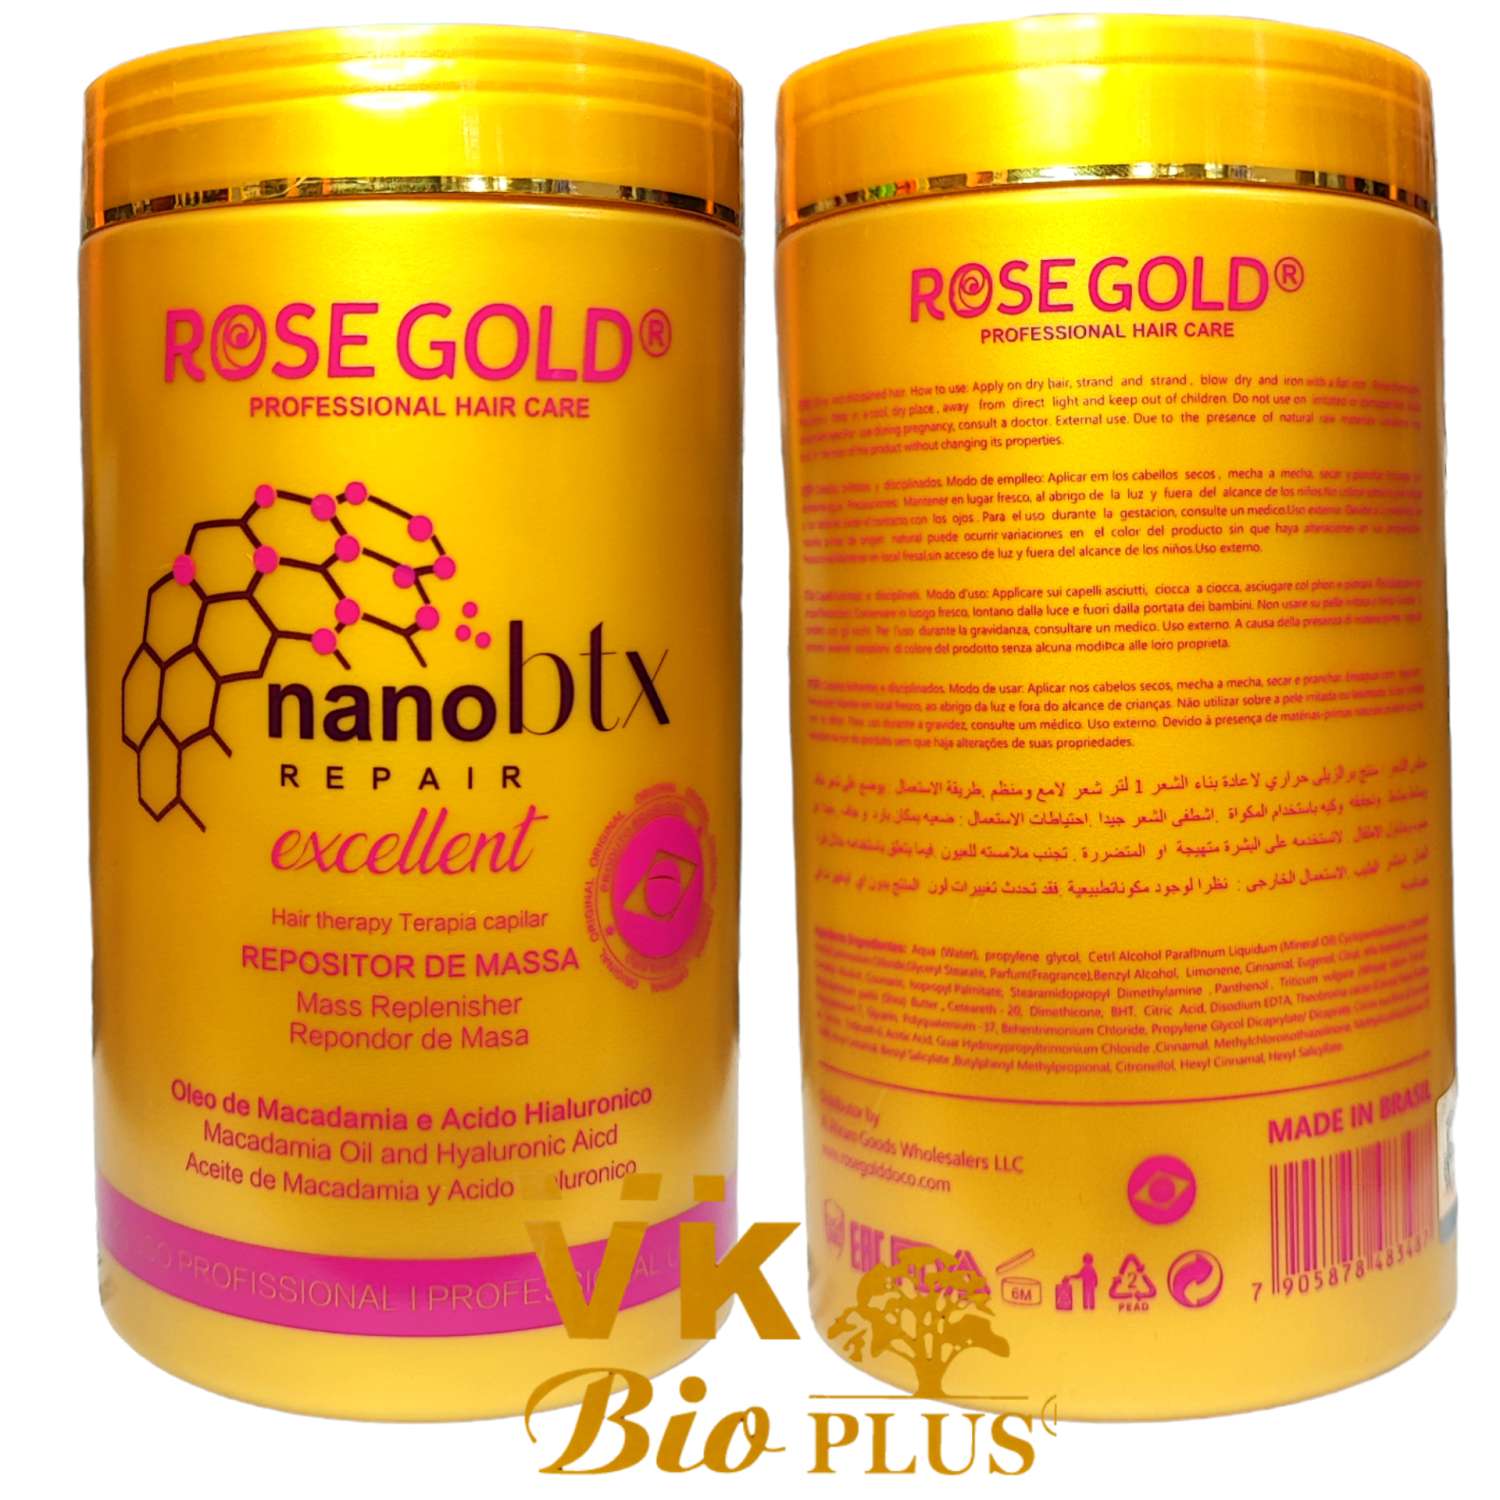 نانو بوتاکس ترمیم کننده رزگلد NANO BOTOX ROSE GOLD